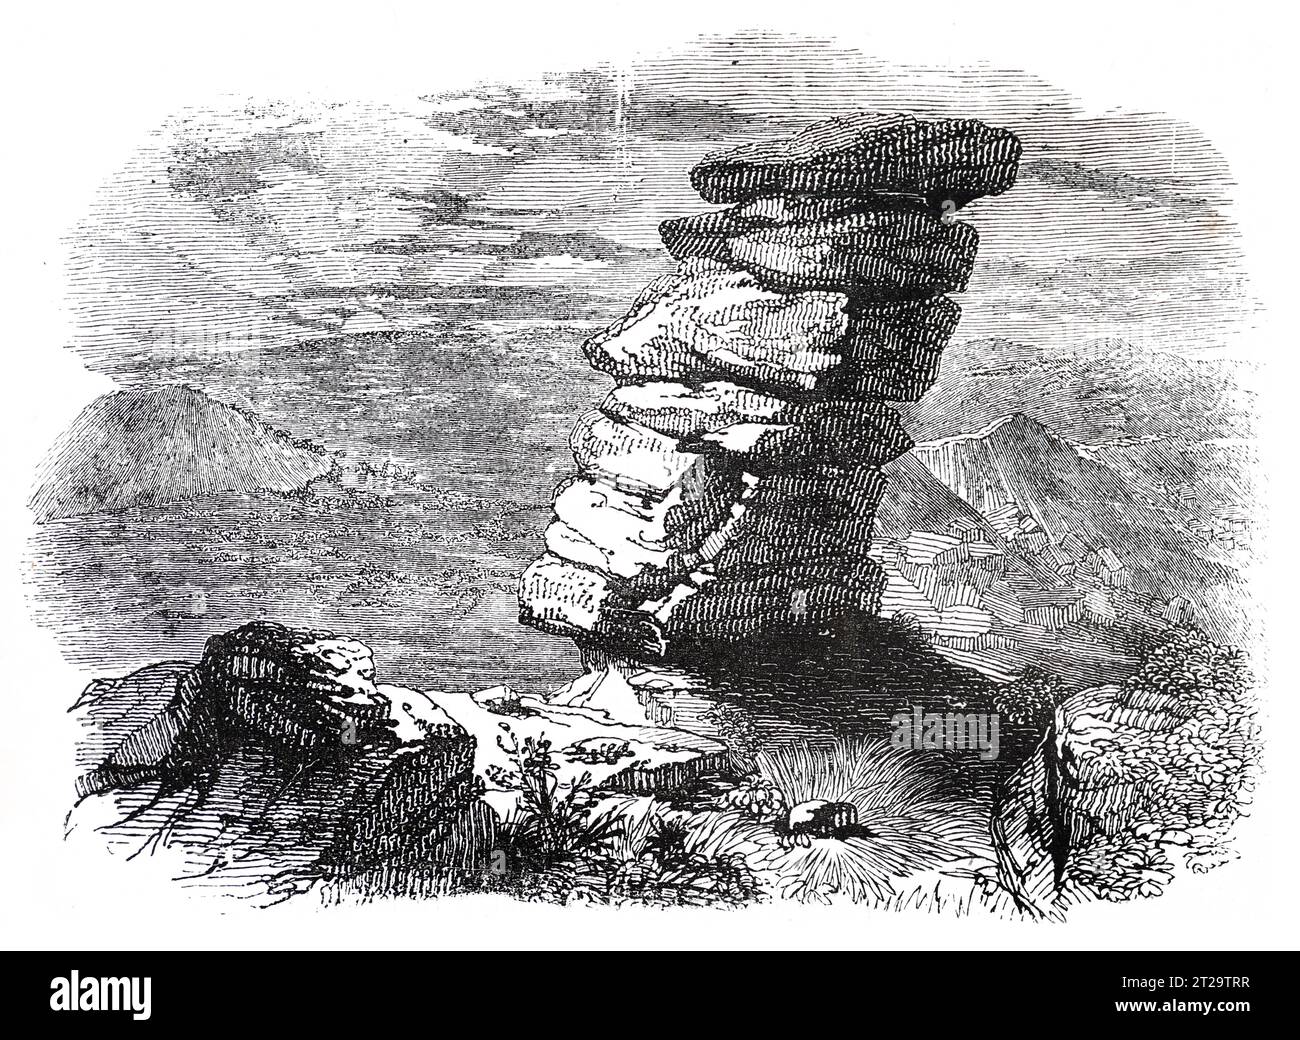 Kilmarth Rocks, Trelech, Monmouthshire. Ilustración en blanco y negro de la 'Vieja Inglaterra' publicada por James Sangster en 1860. Foto de stock